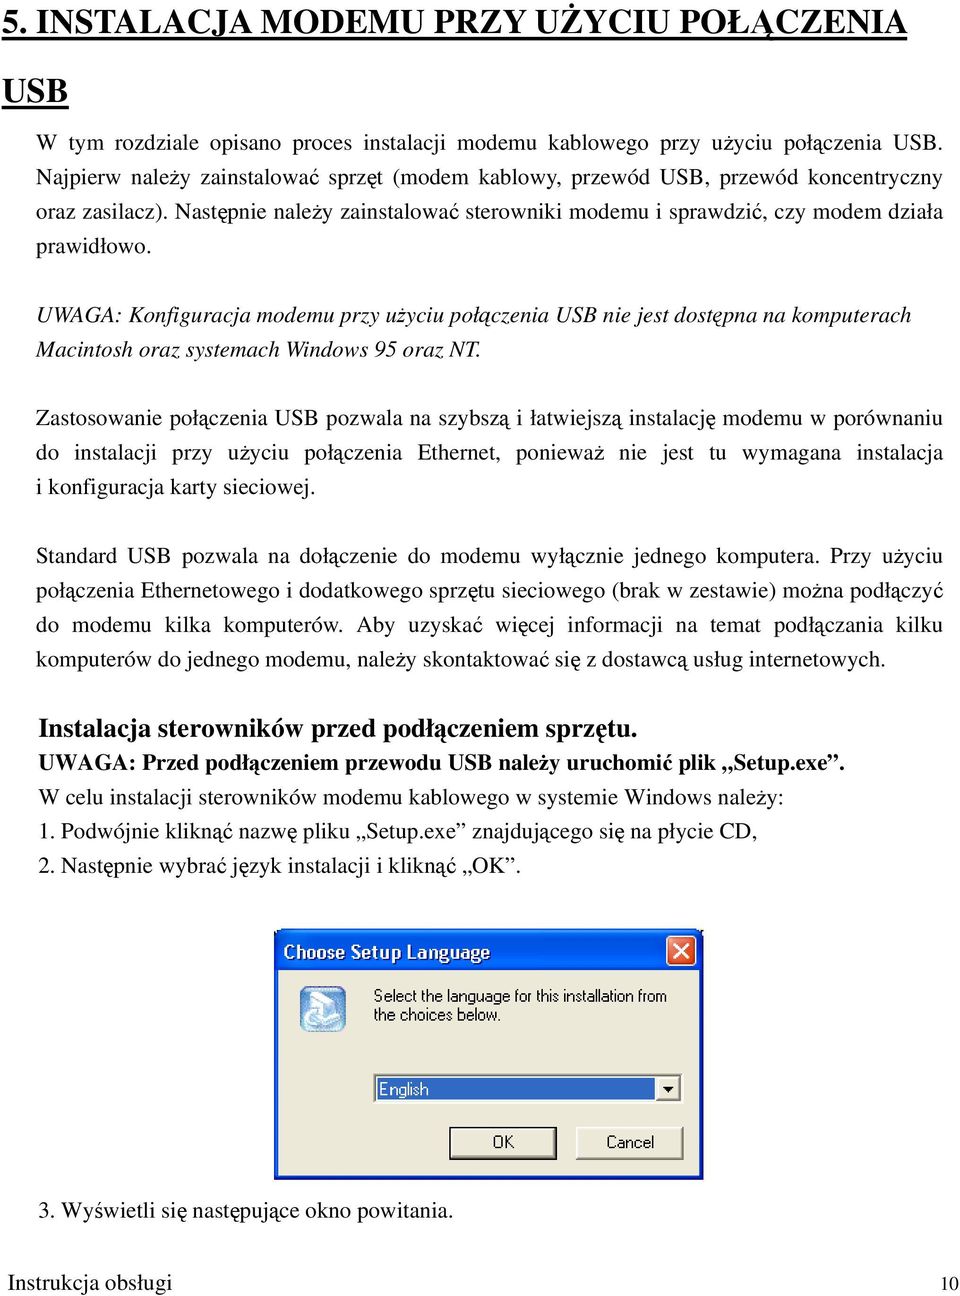 UWAGA: Konfiguracja modemu przy użyciu połączenia USB nie jest dostępna na komputerach Macintosh oraz systemach Windows 95 oraz NT.